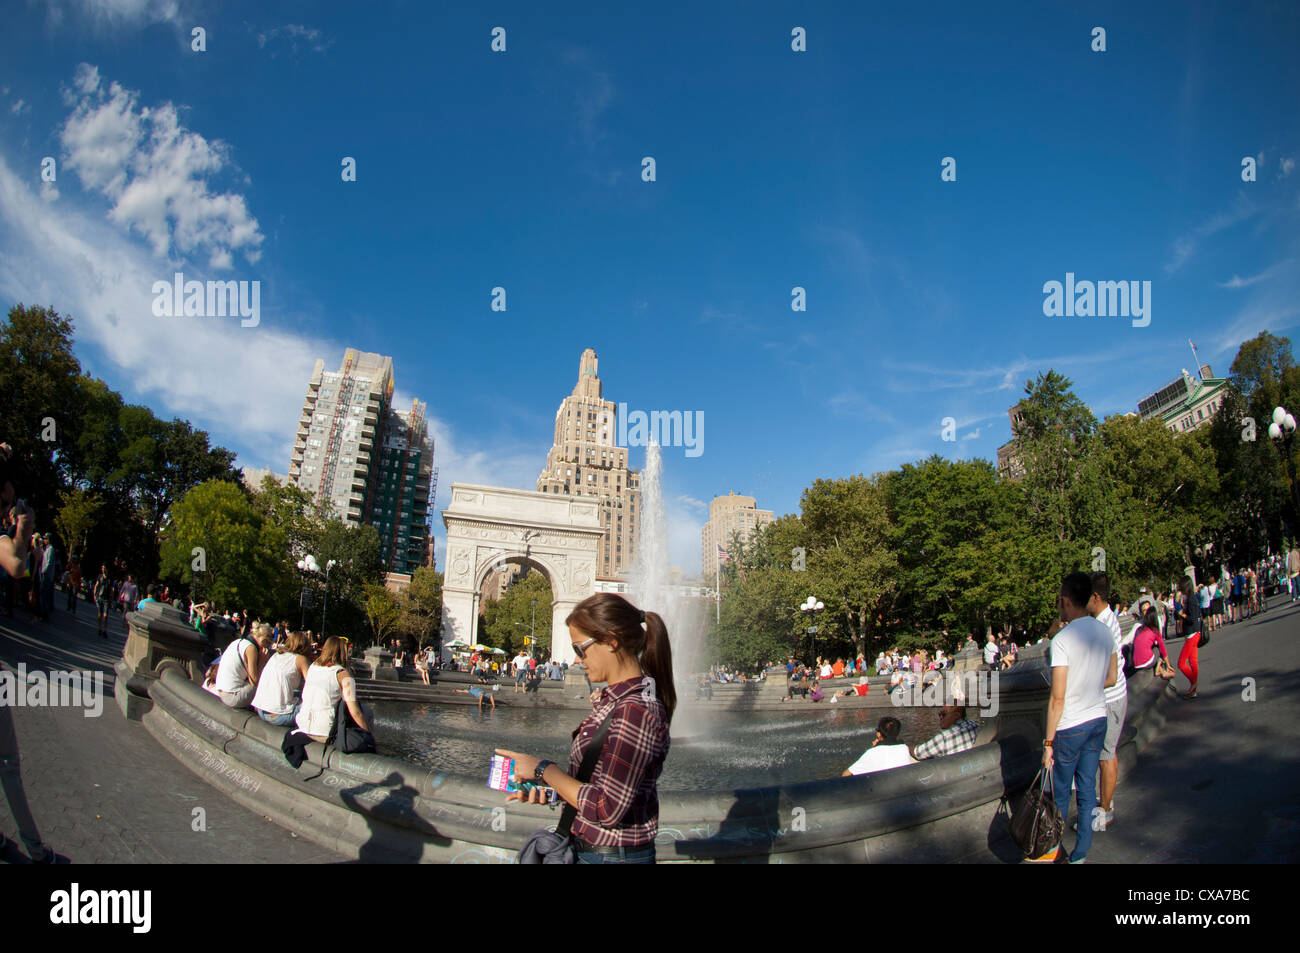 Der Brunnen am Washington Square Park in Greenwich Village in New York gesehen Stockfoto